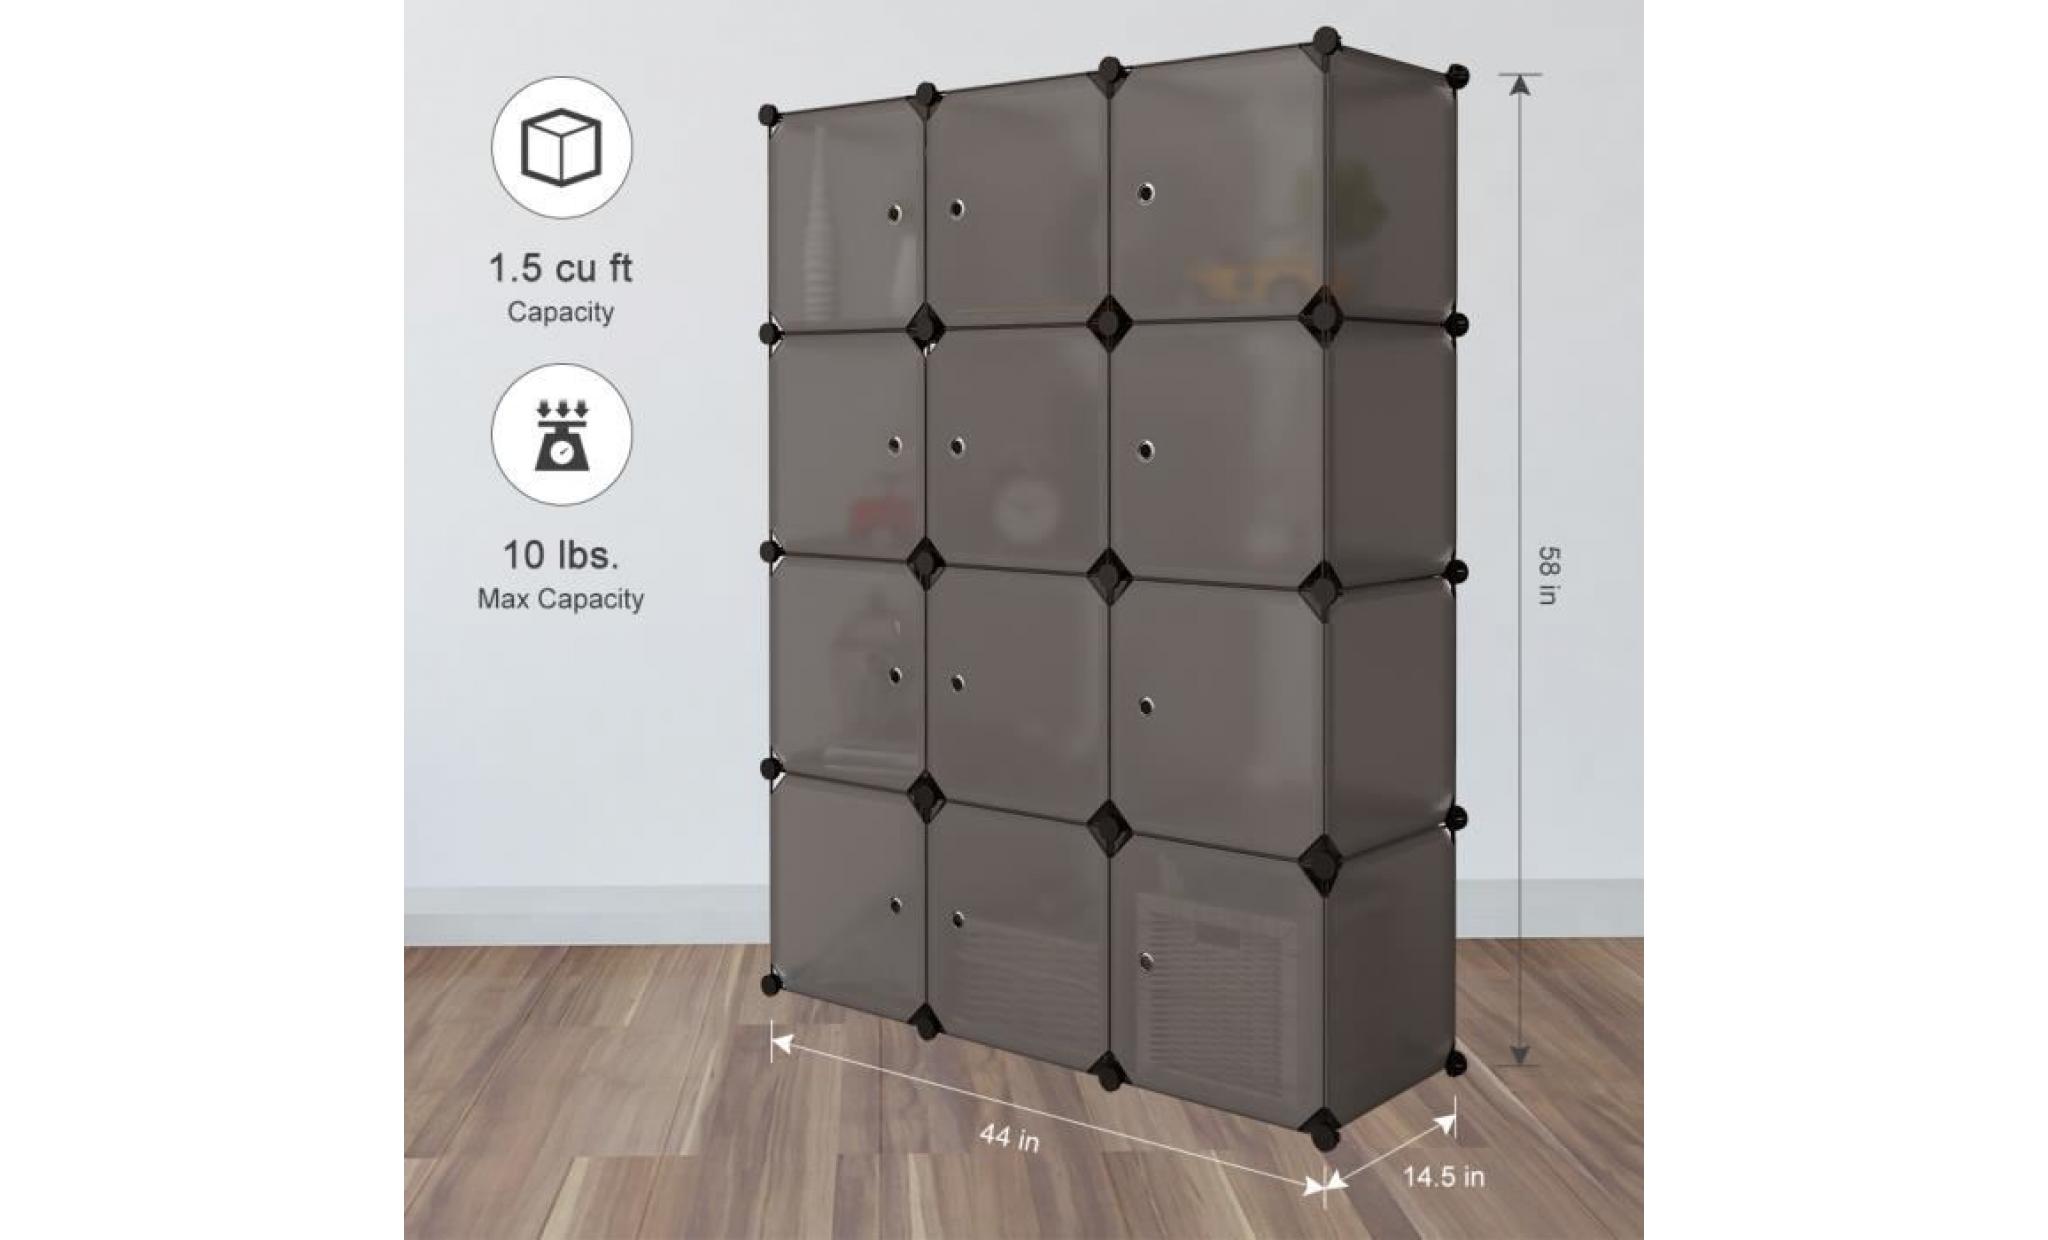 armoire langria 12 cube multifonctionnel armoire modulaire empilable en plastique cube gris pas cher